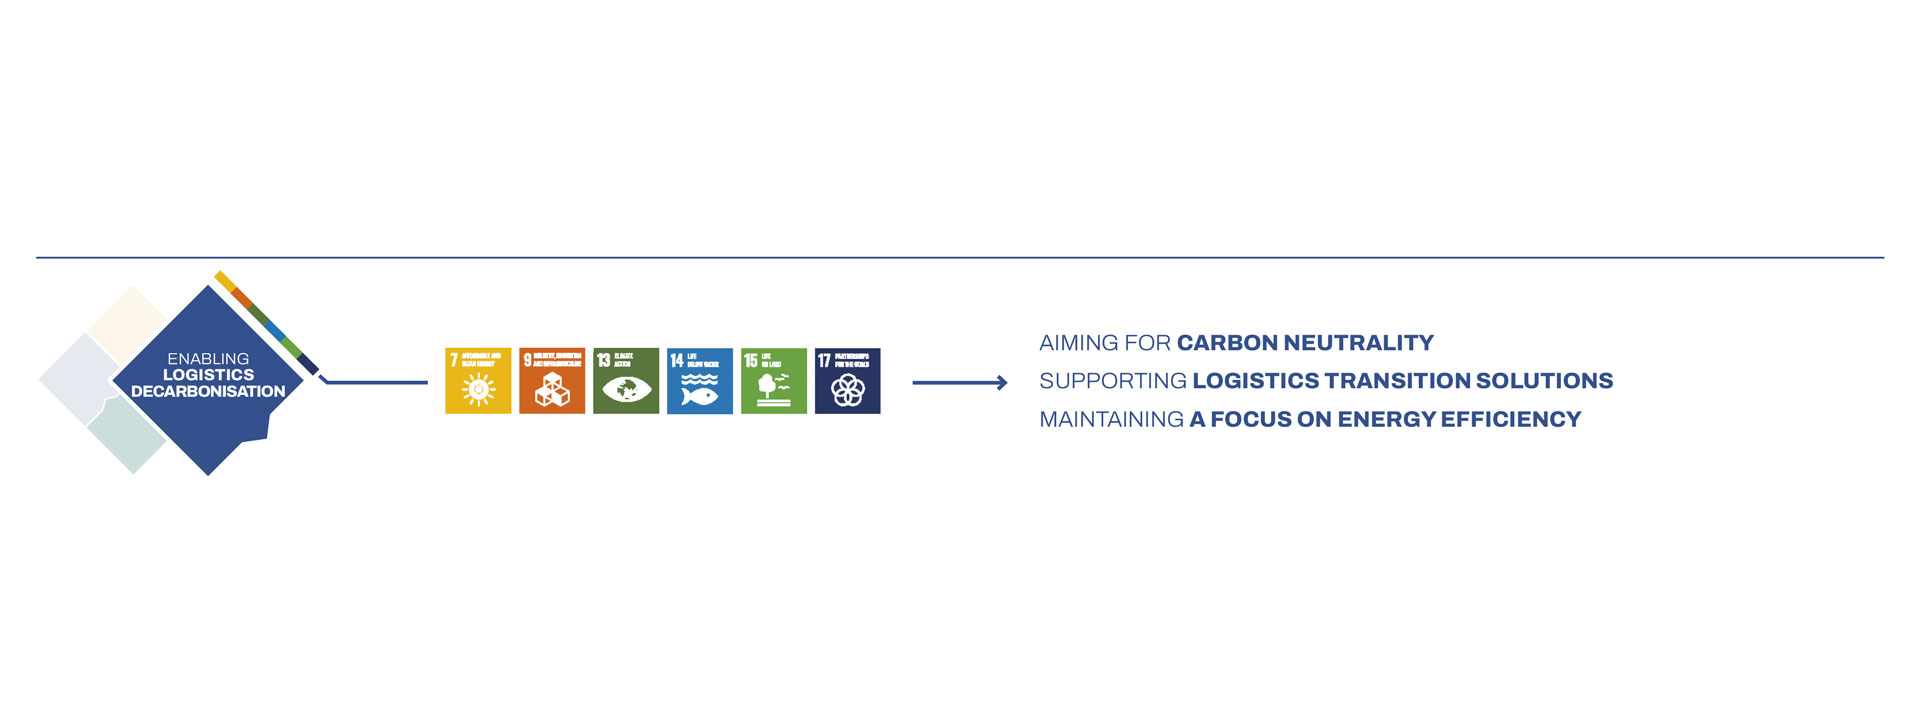 تمكين الخدمات اللوجستية المعتمدة على تقنيات الحد من انبعاثات الكربون